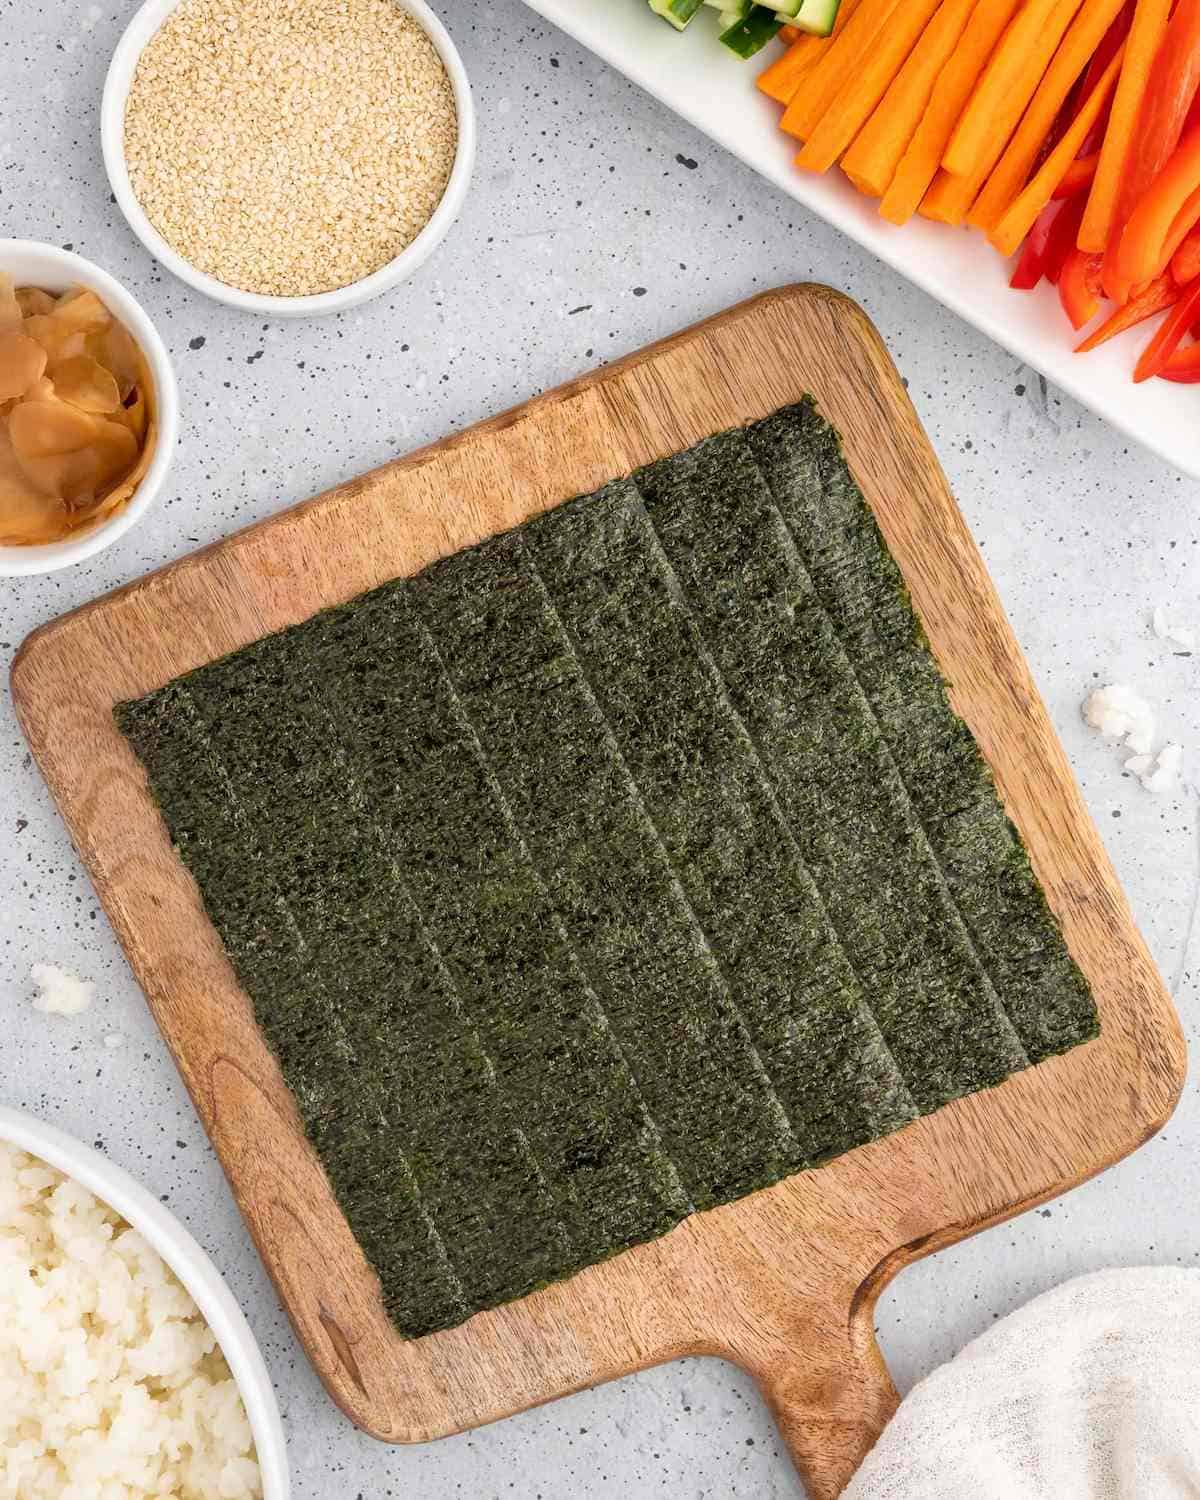 Nori sheet on a cutting board next to chopped veggies for making temaki sushi.